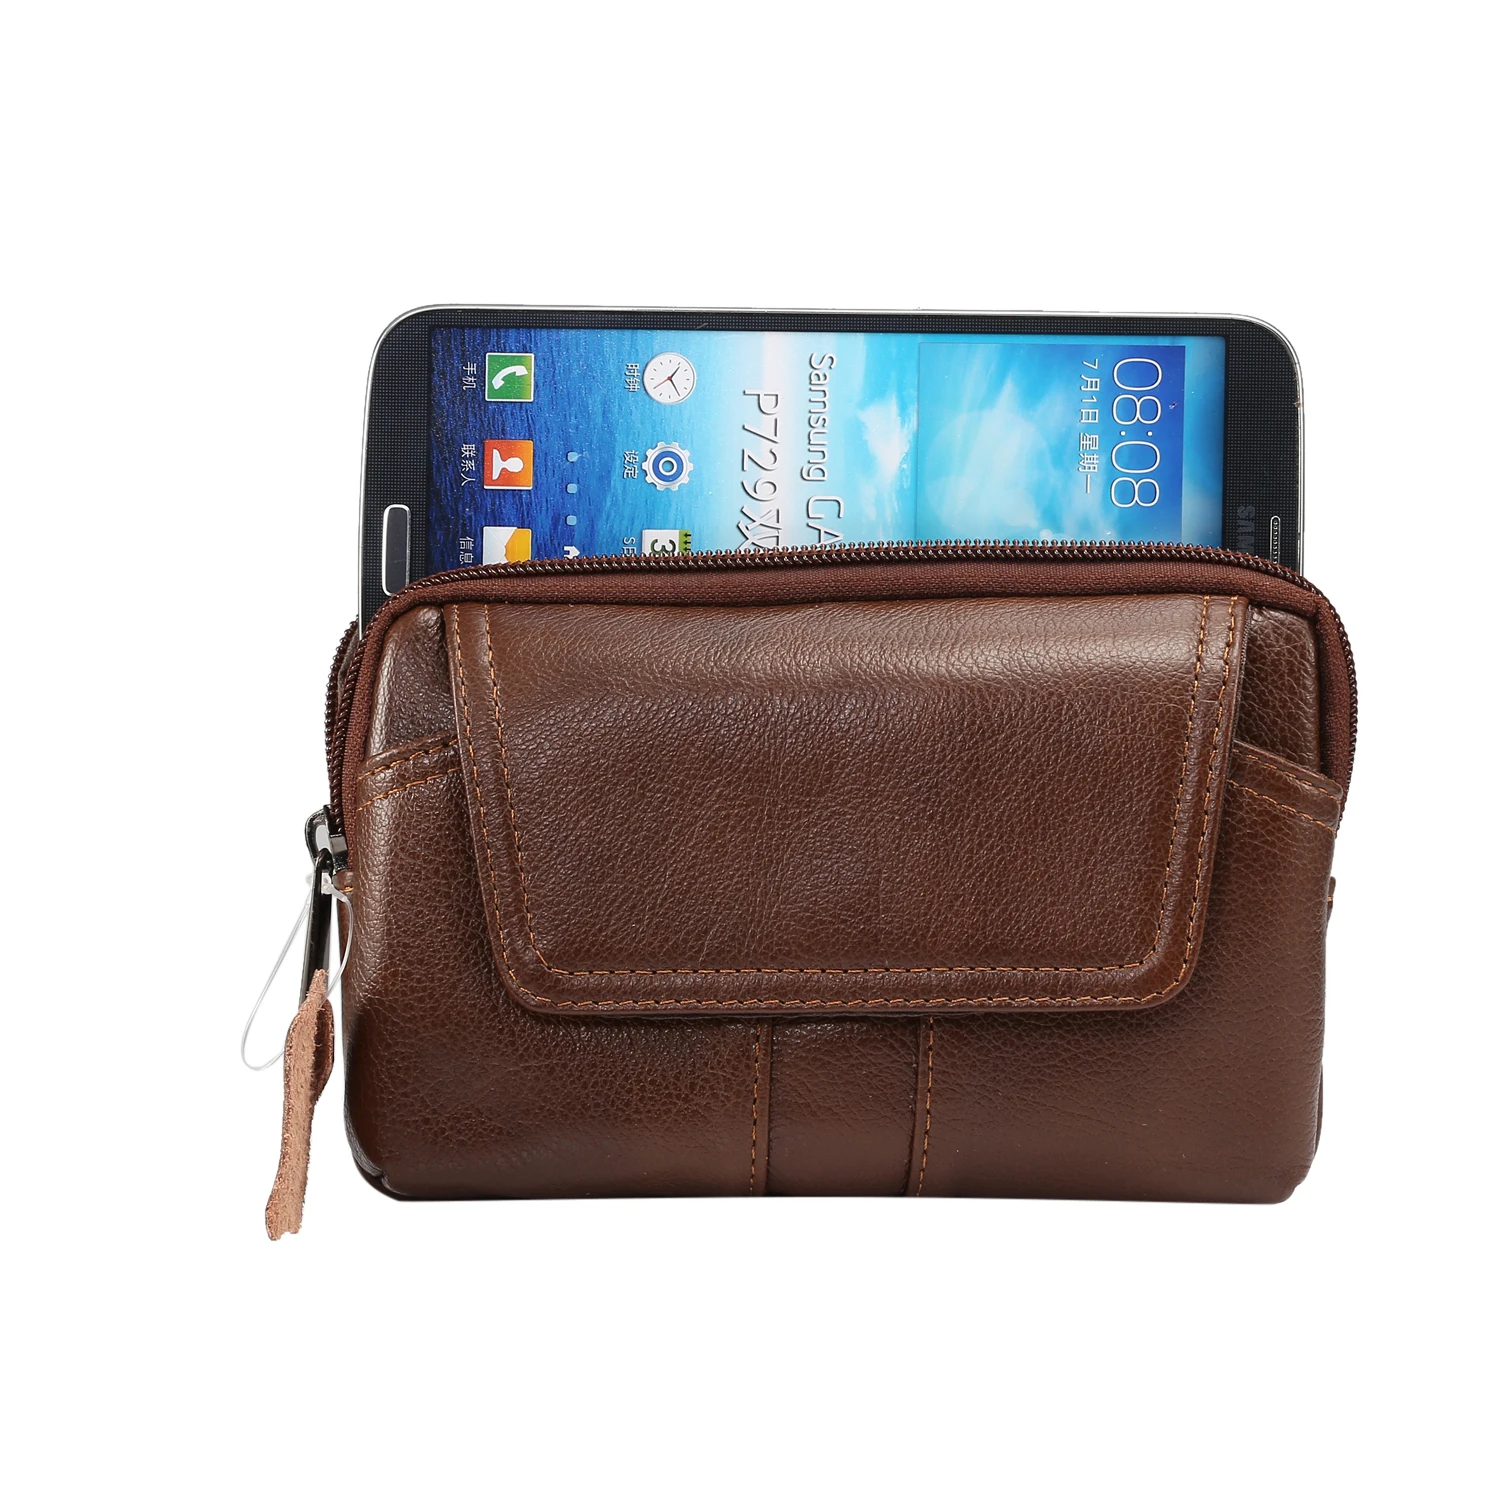 Первый слой натуральной воловьей кожи, чехол на пояс, сумка-кошелек для Iphone X XS MAX XR 6 7 8 Plus для samsung S8 S9